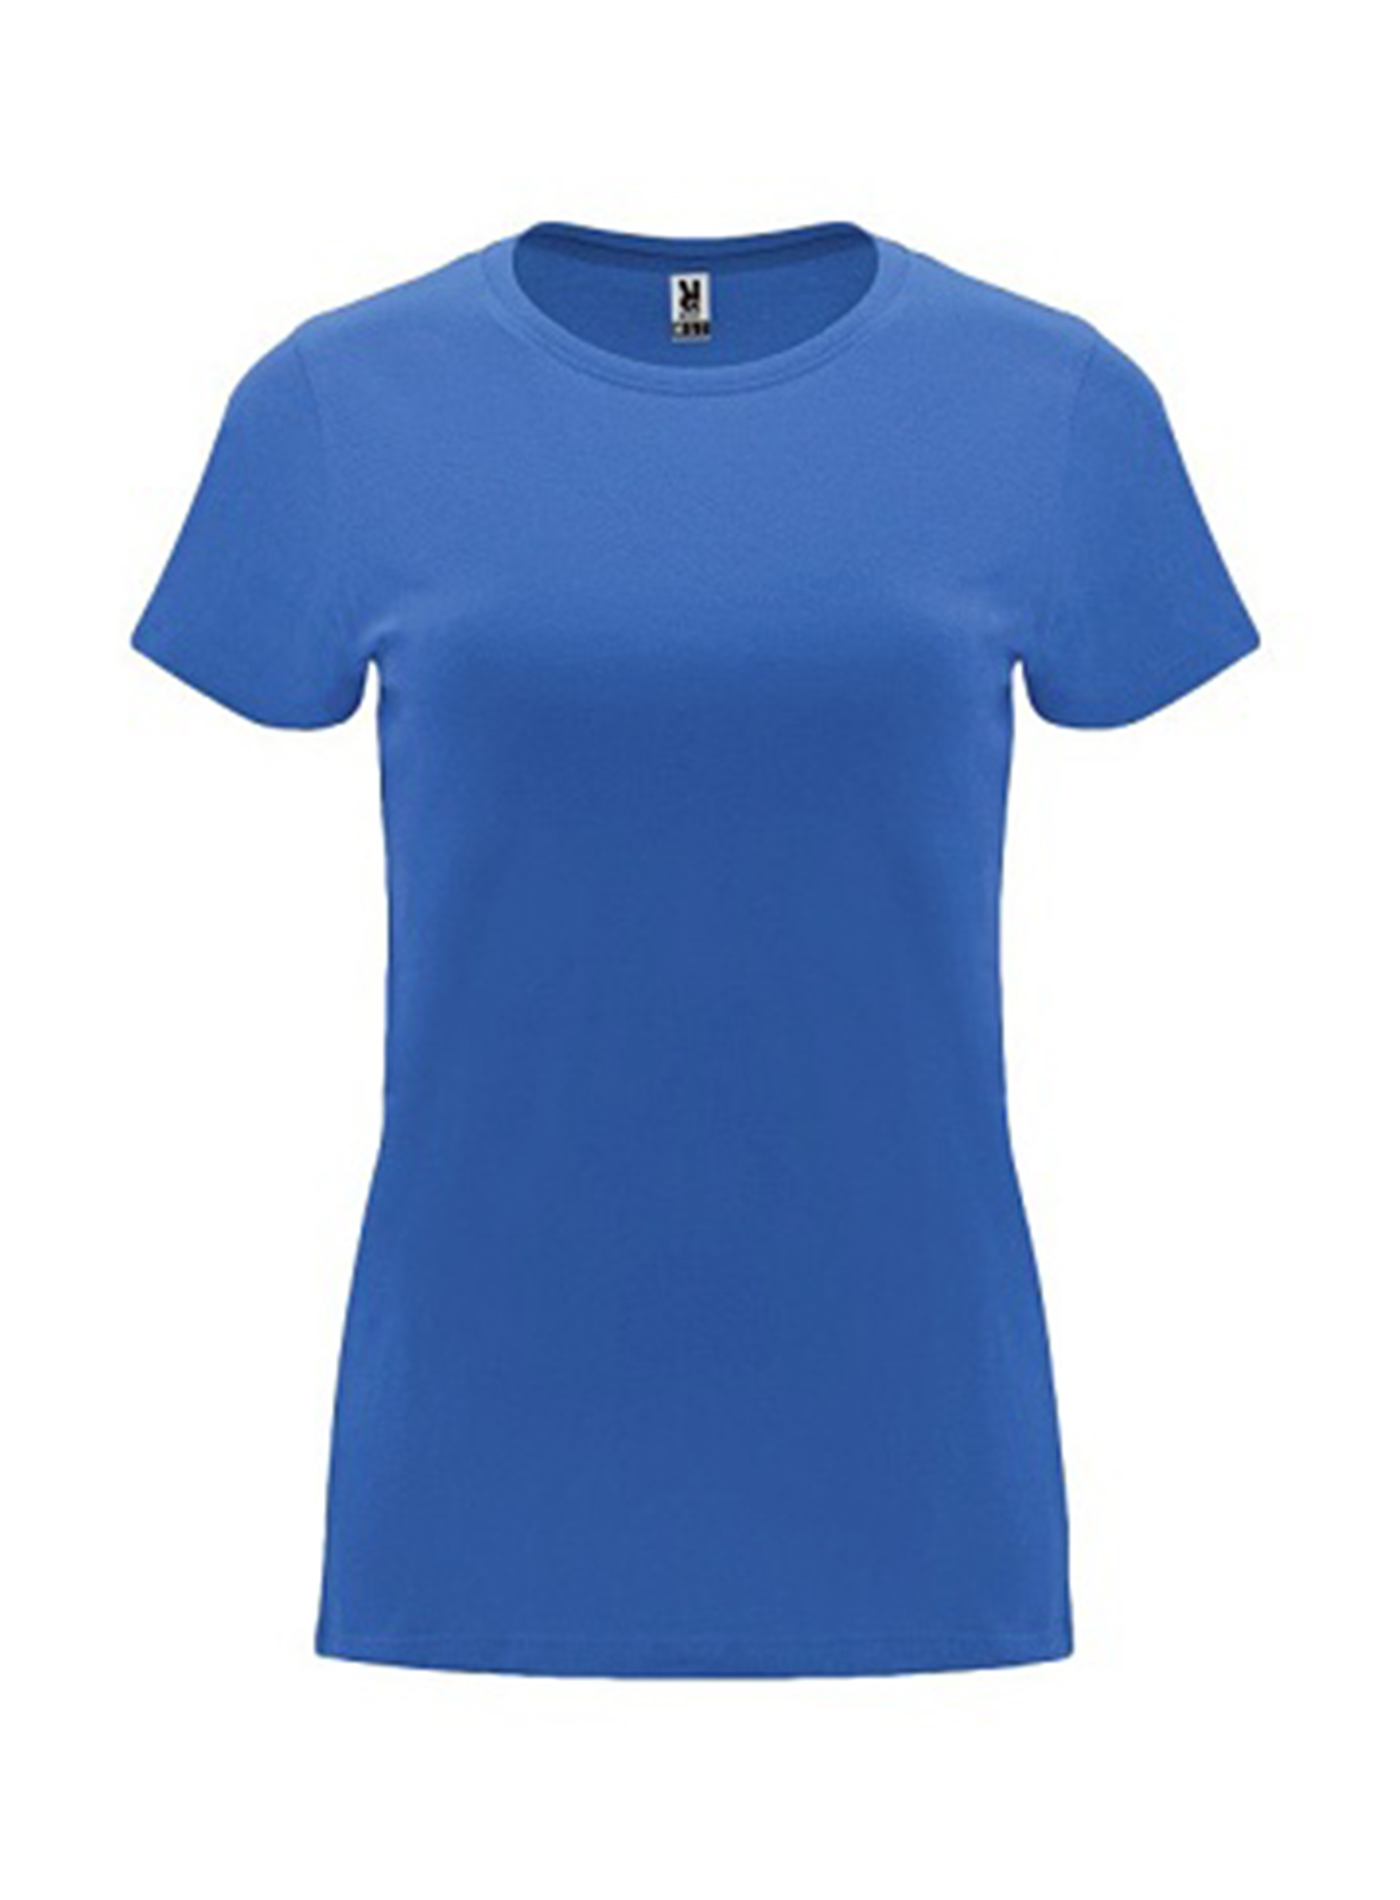 Dámské tričko Roly Capri - Safírově modrá S